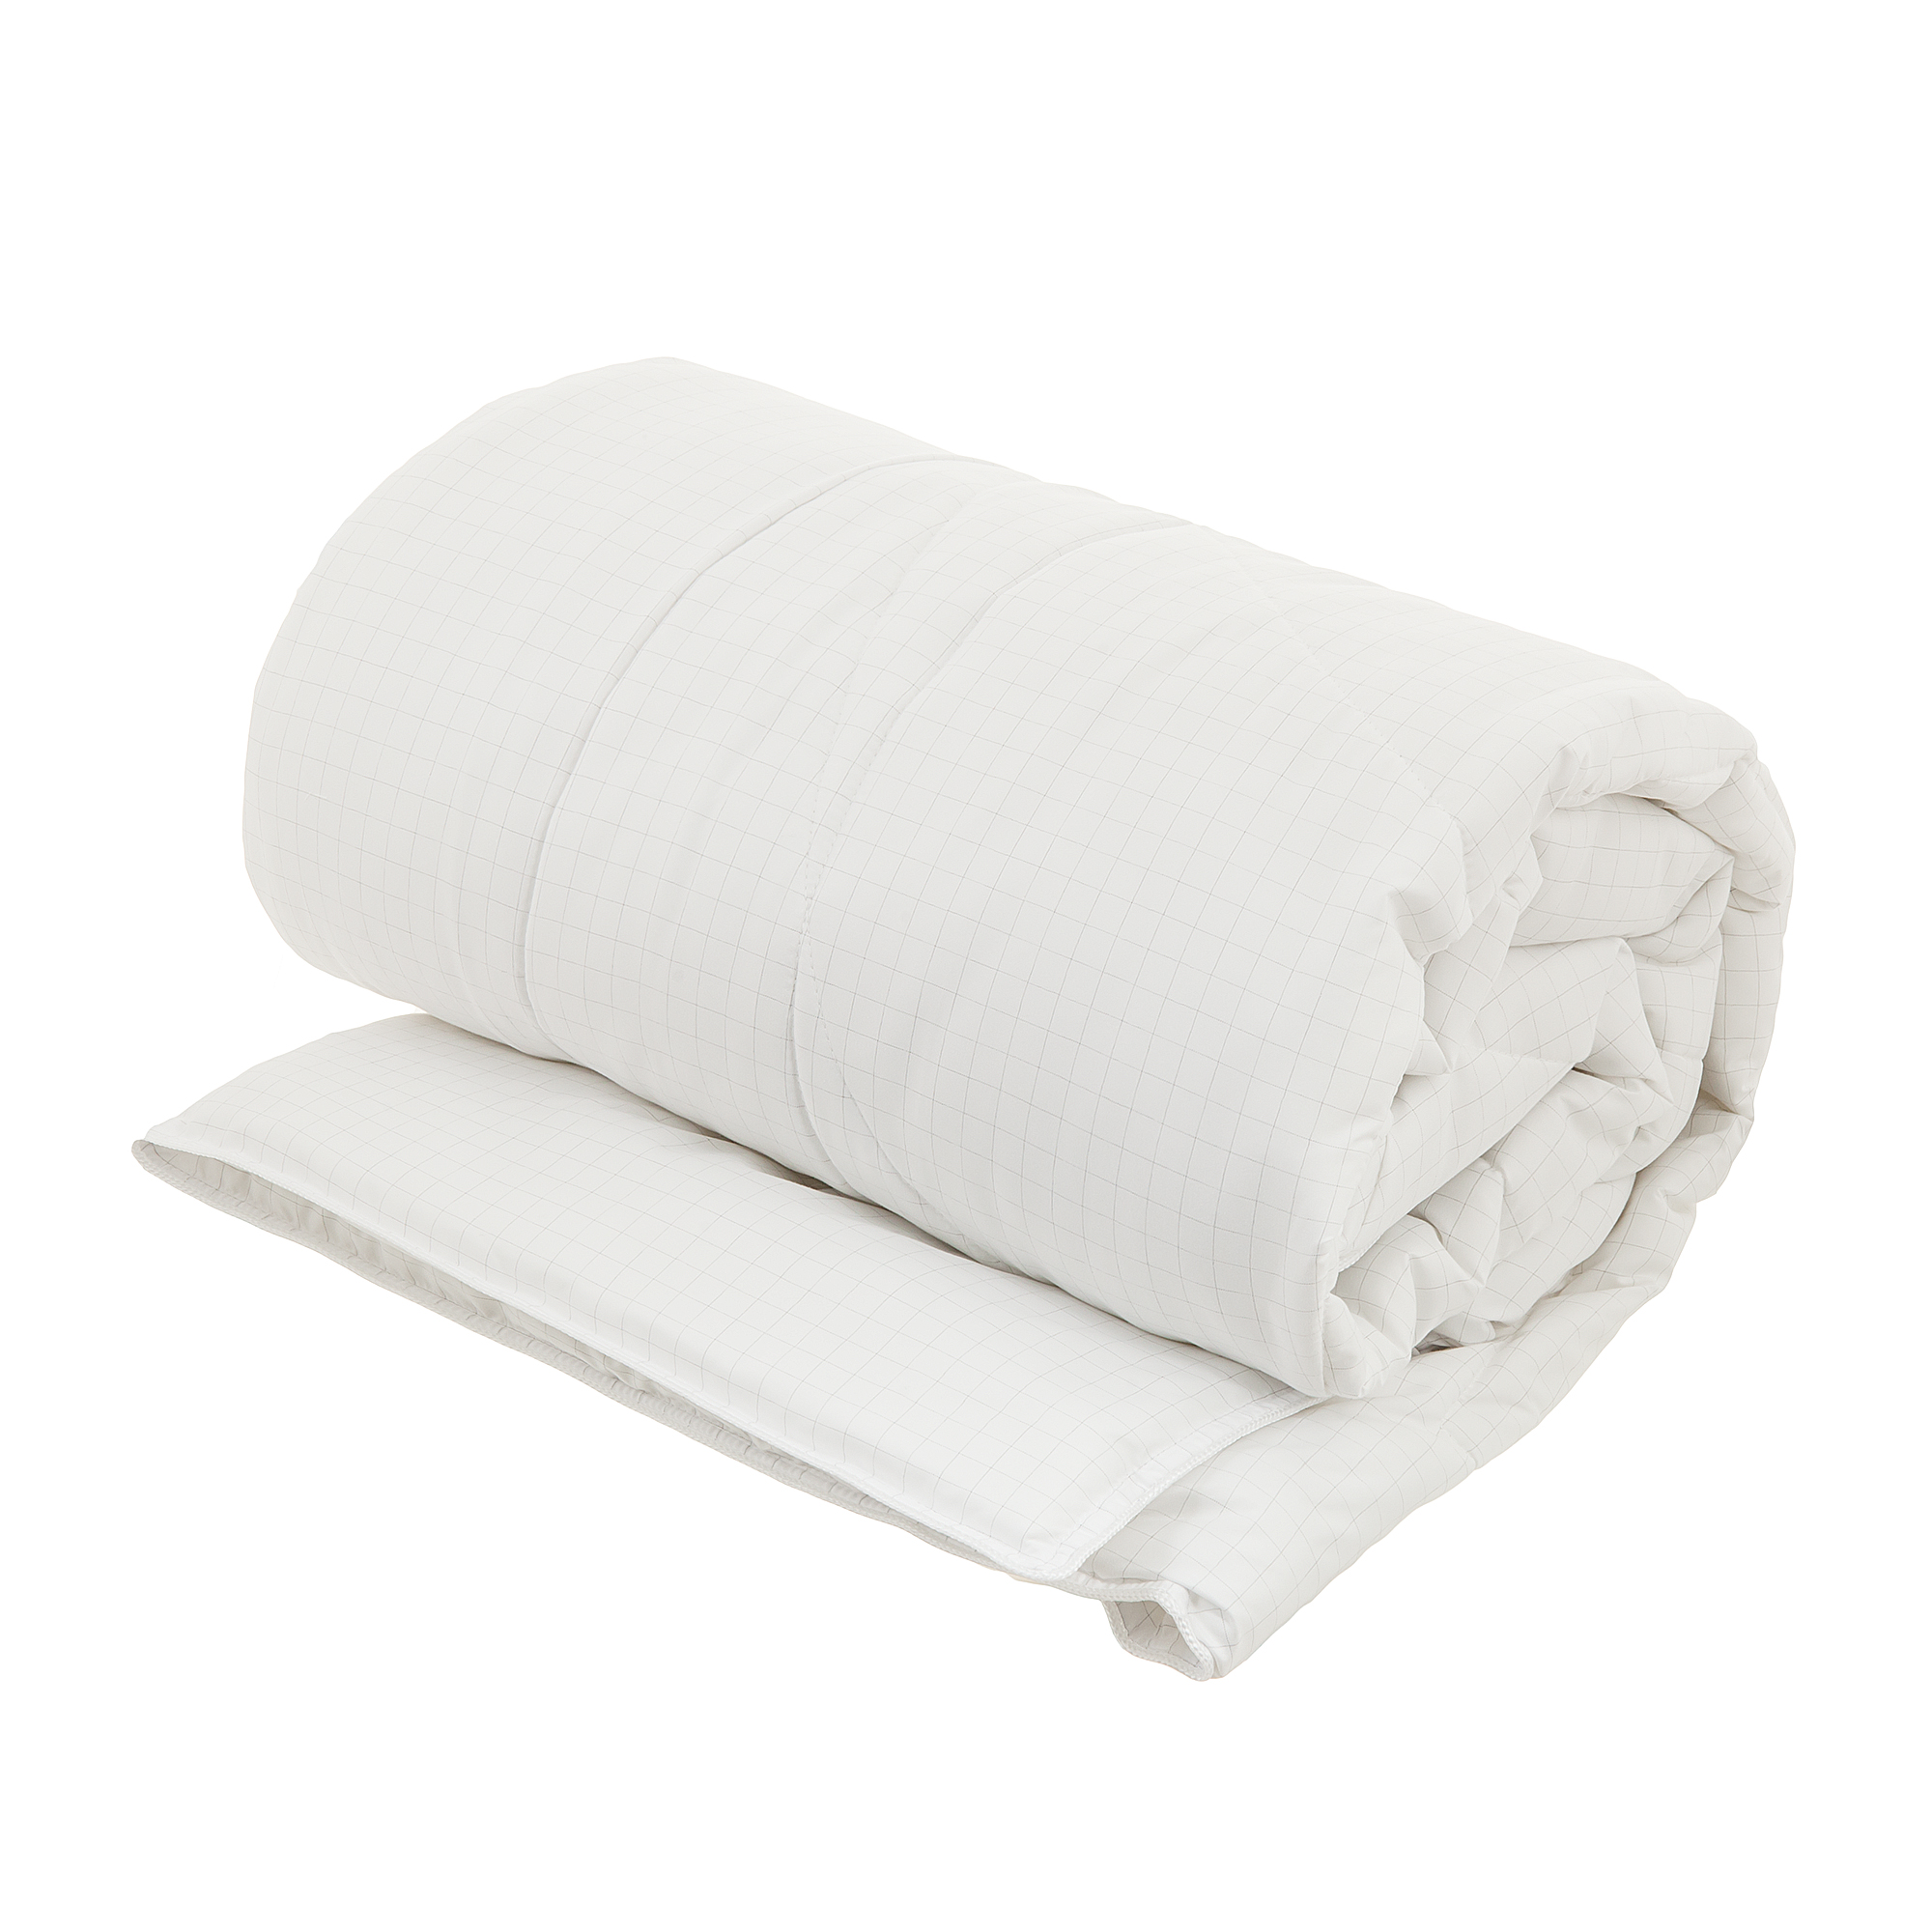 Одеяло Либра Togas 140х200 одеяло togas лира белое 140х200 см 20 04 17 0091